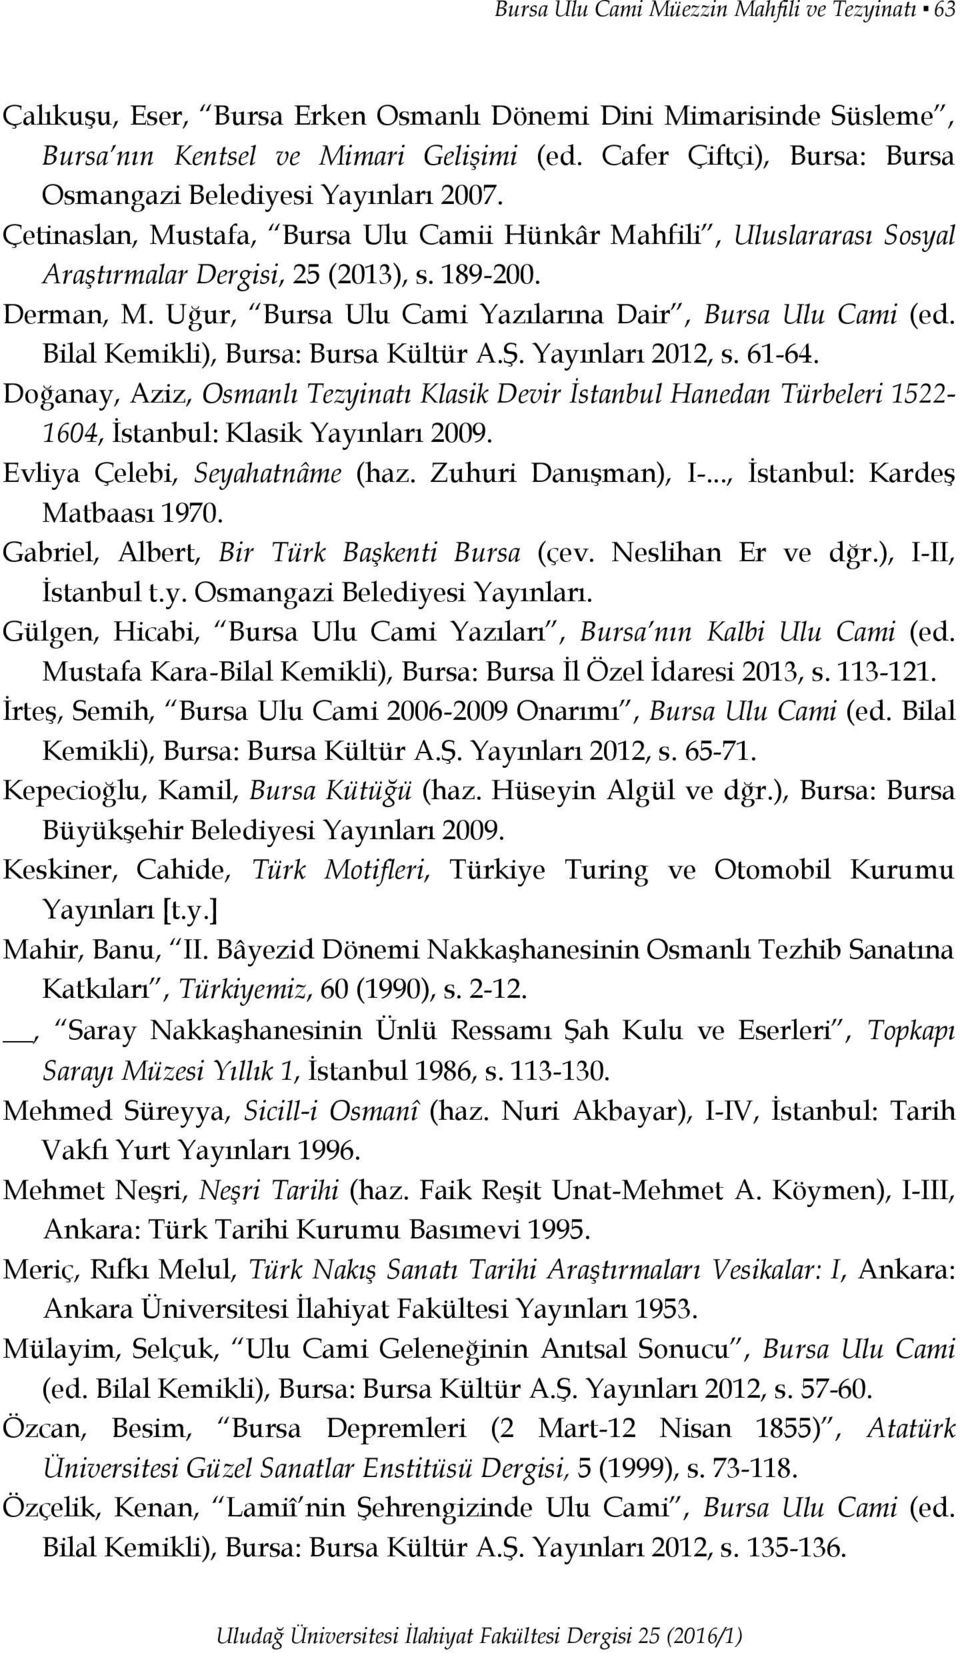 Uğur, Bursa Ulu Cami Yazılarına Dair, Bursa Ulu Cami (ed. Bilal Kemikli), Bursa: Bursa Kültür A.Ş. Yayınları 2012, s. 61-64.